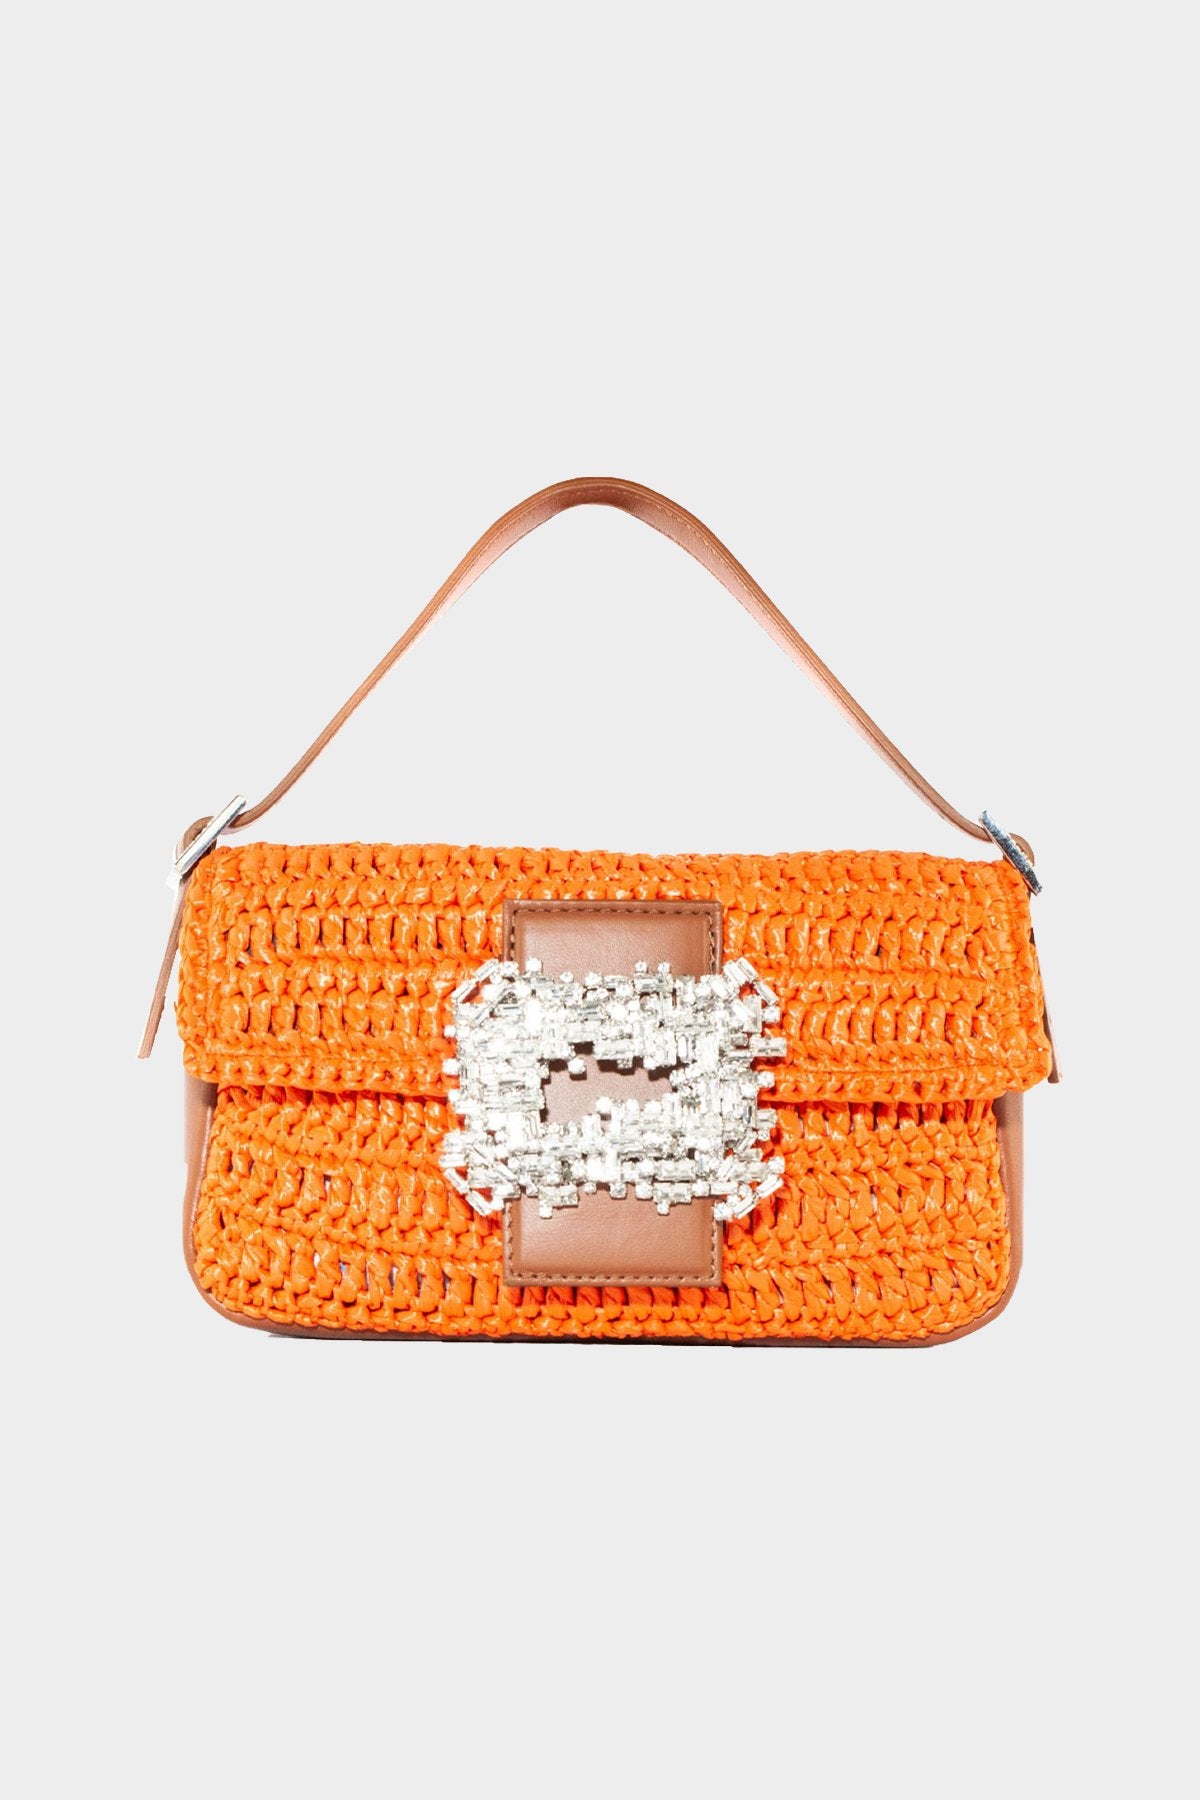 Habibi Crochet Bag in Orange